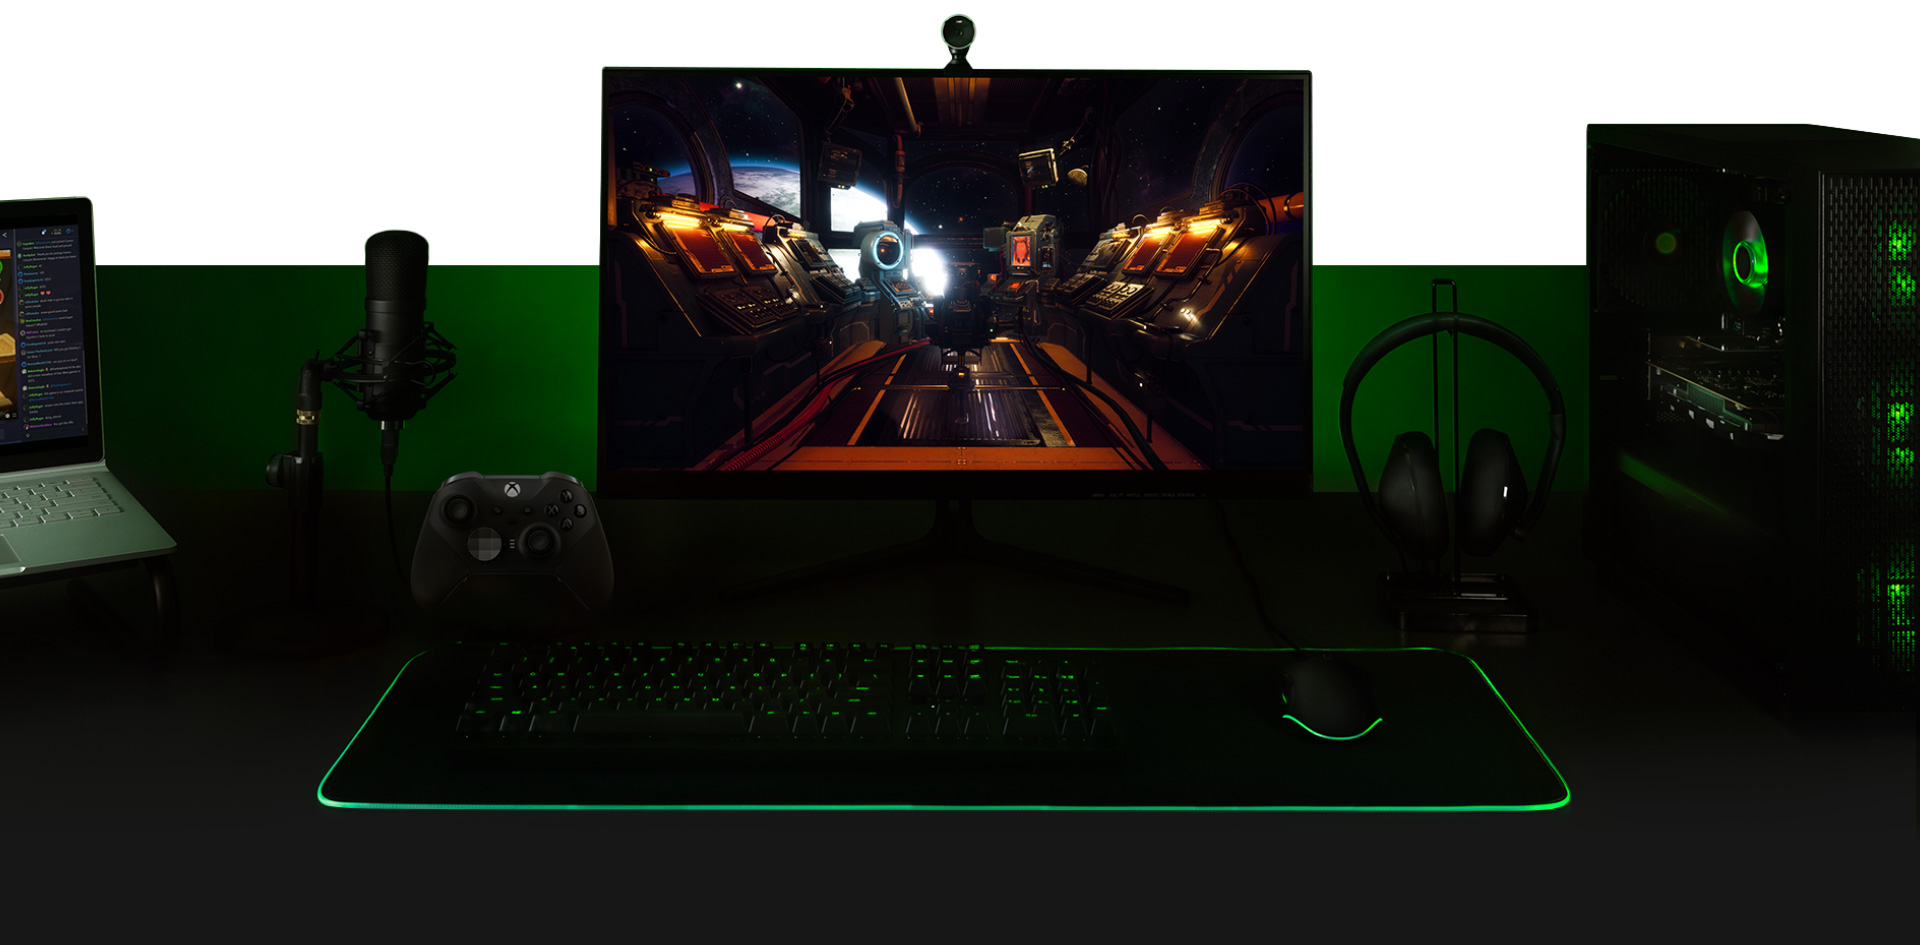 Skrivebord med PC, monitor med The Outer Worlds-spillskjerm, tastatur, Xbox One Controller, mikrofon og en laptop, alt satt opp sammen.